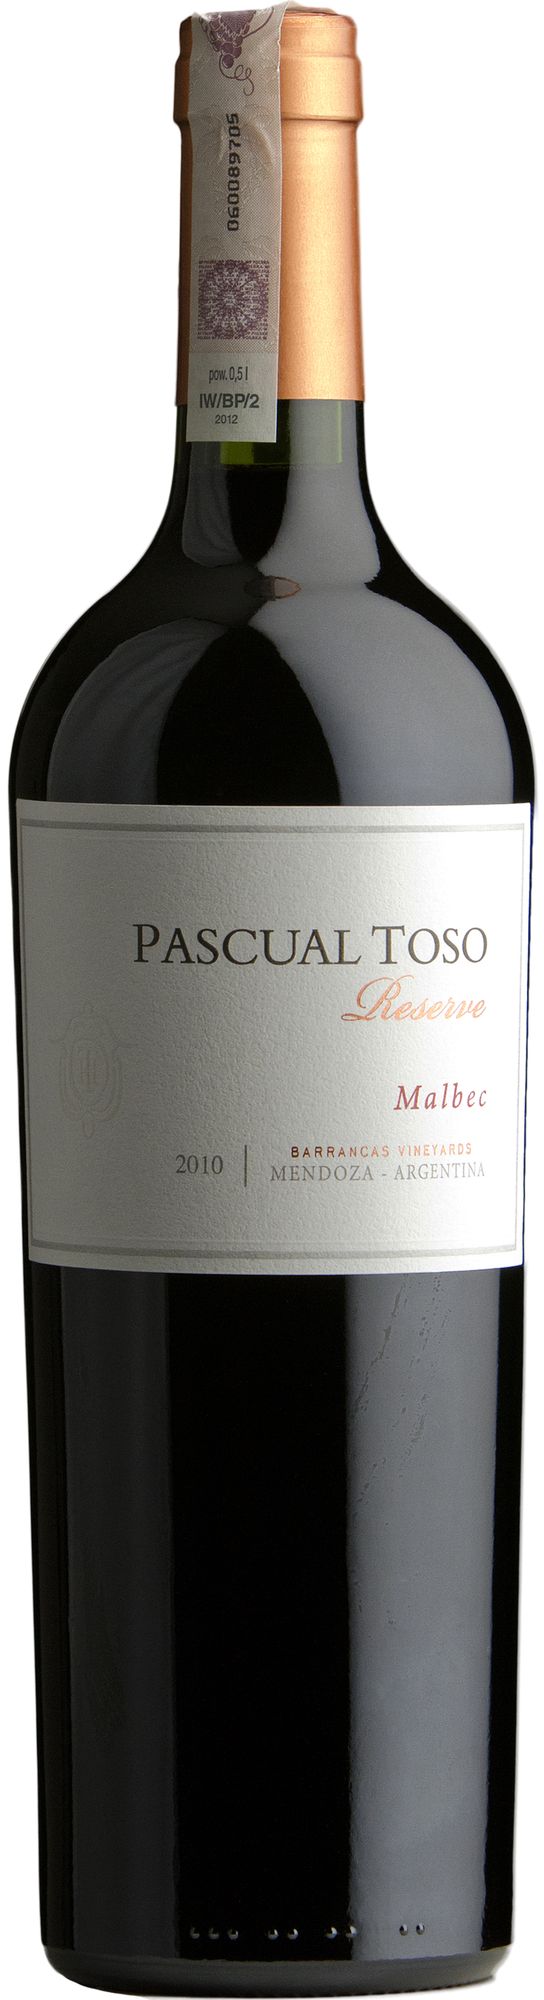 Wino Pascual Toso Malbec Reserva Mendoza